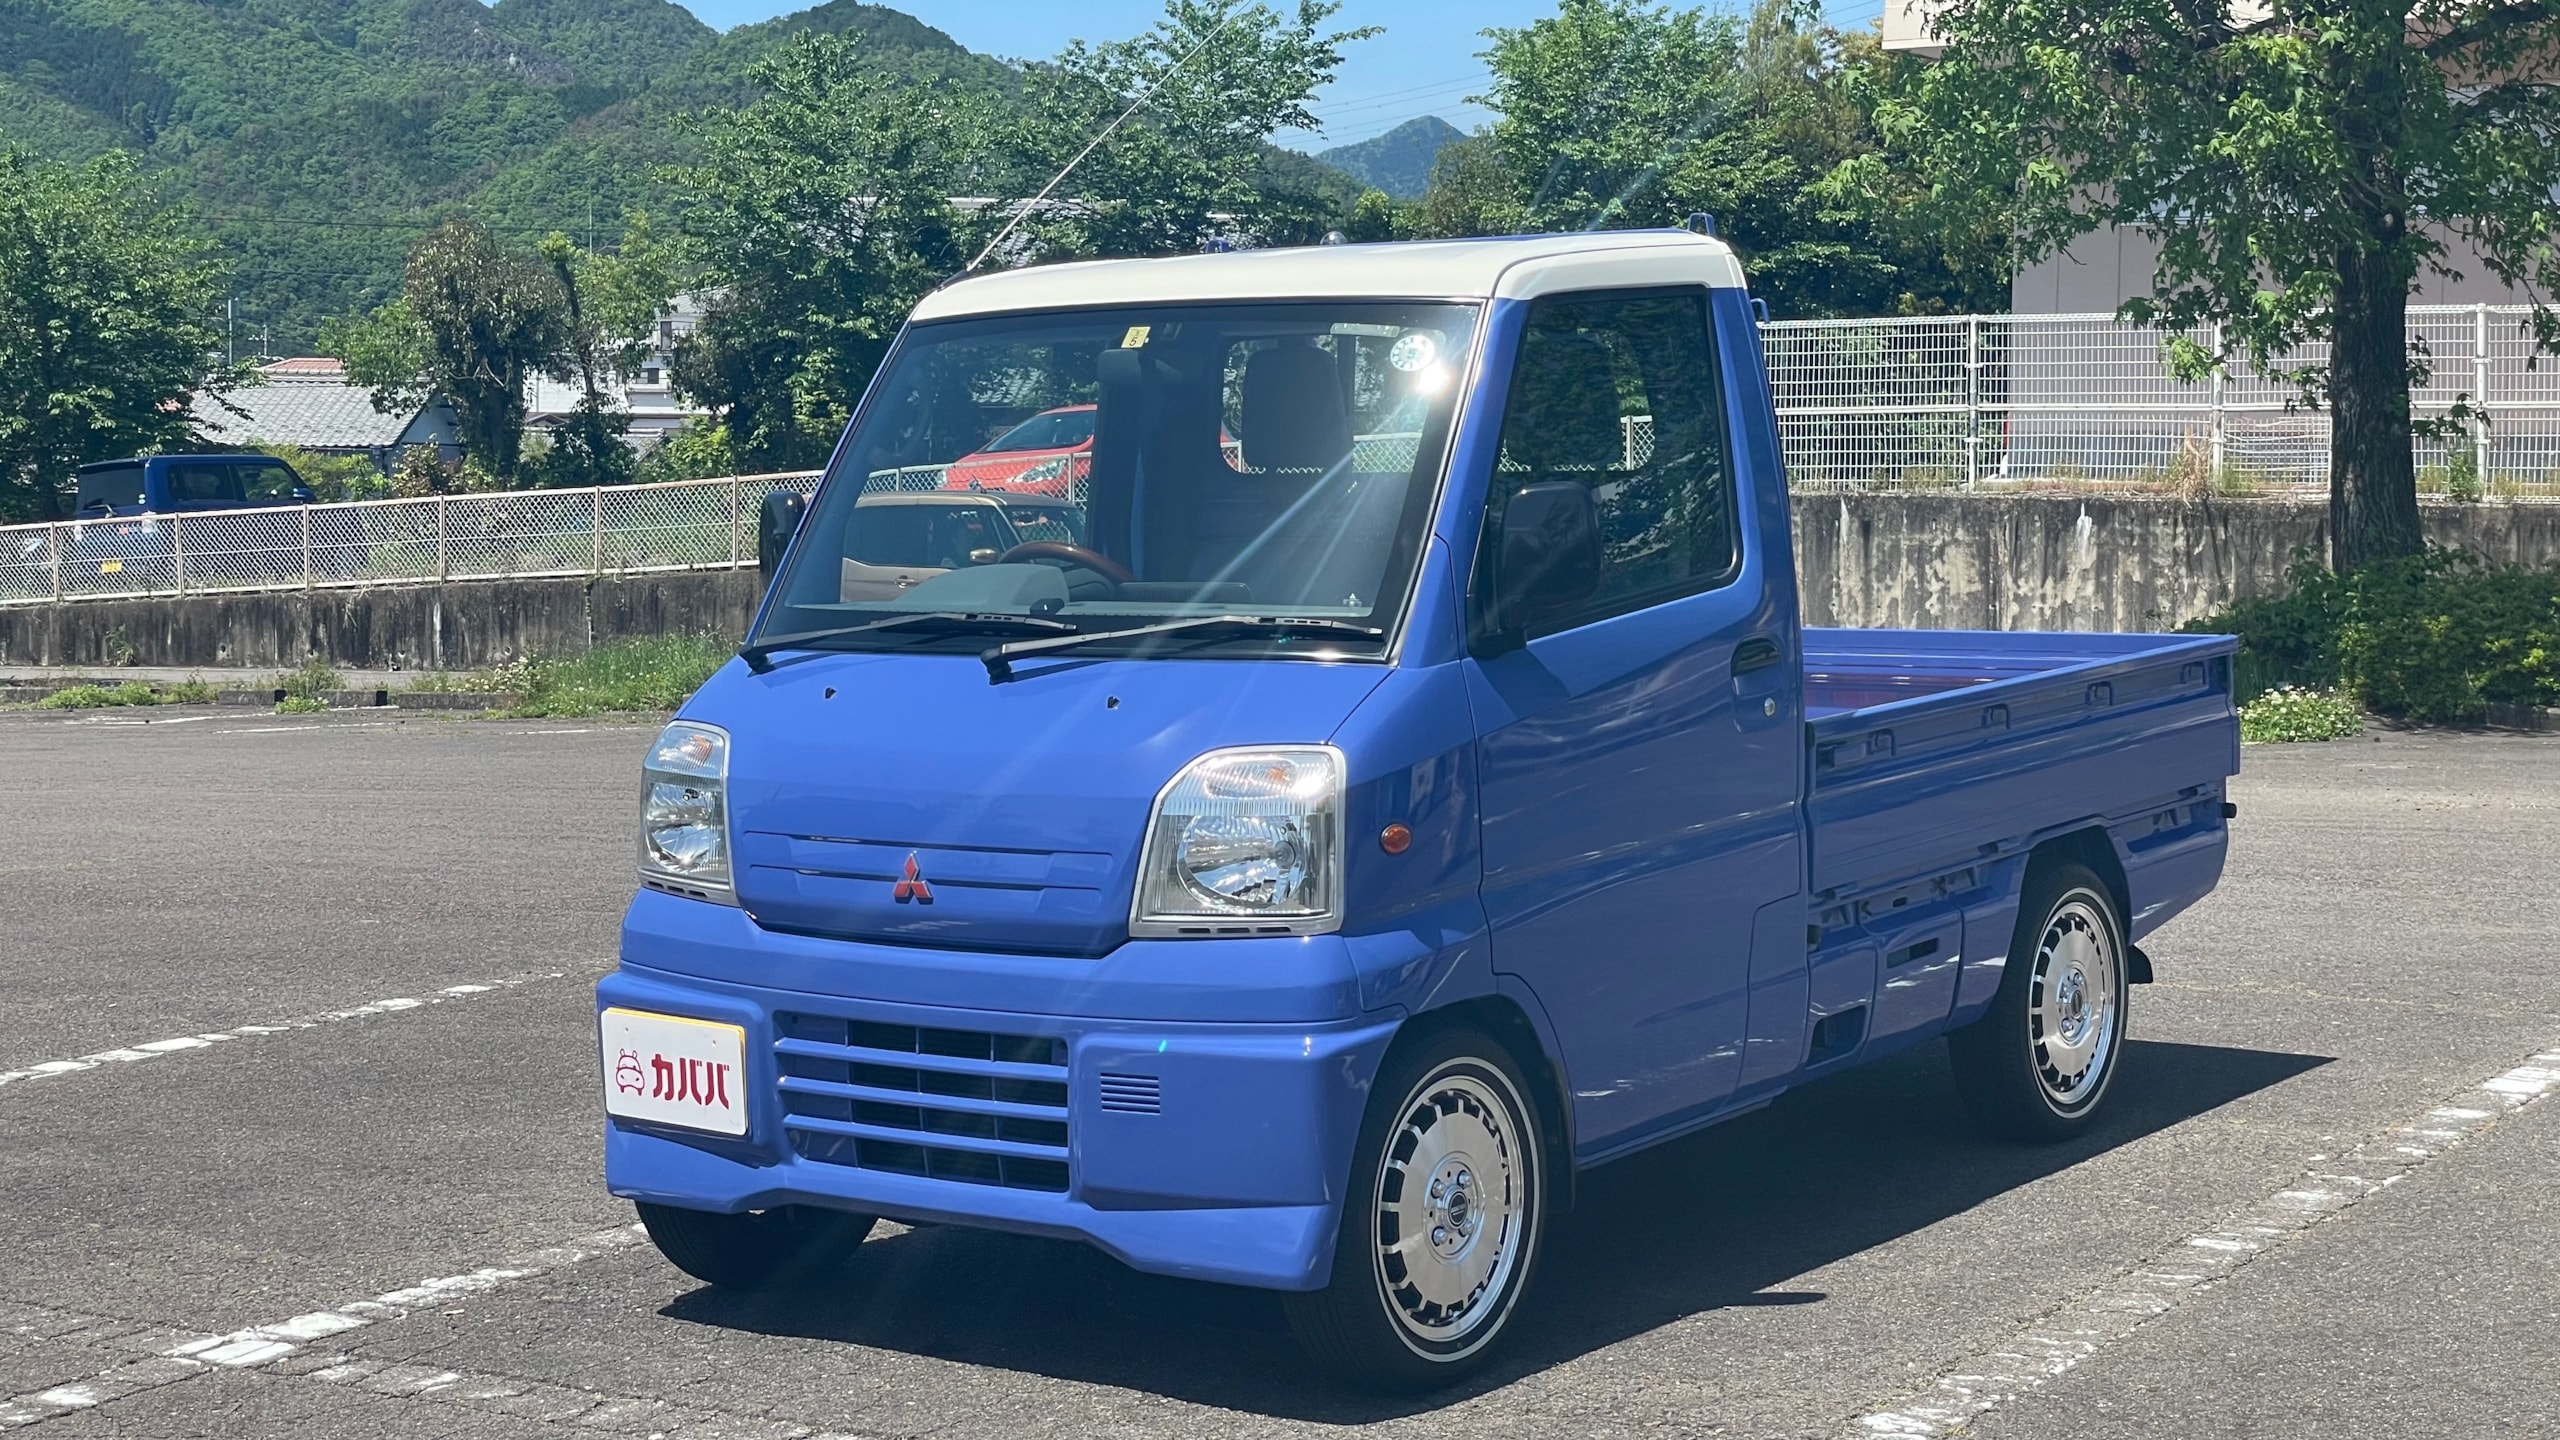 ミニキャブトラック TL 4WD(三菱)1999年式 39.9万円の中古車 - 自動車フリマ(車の個人売買)。カババ